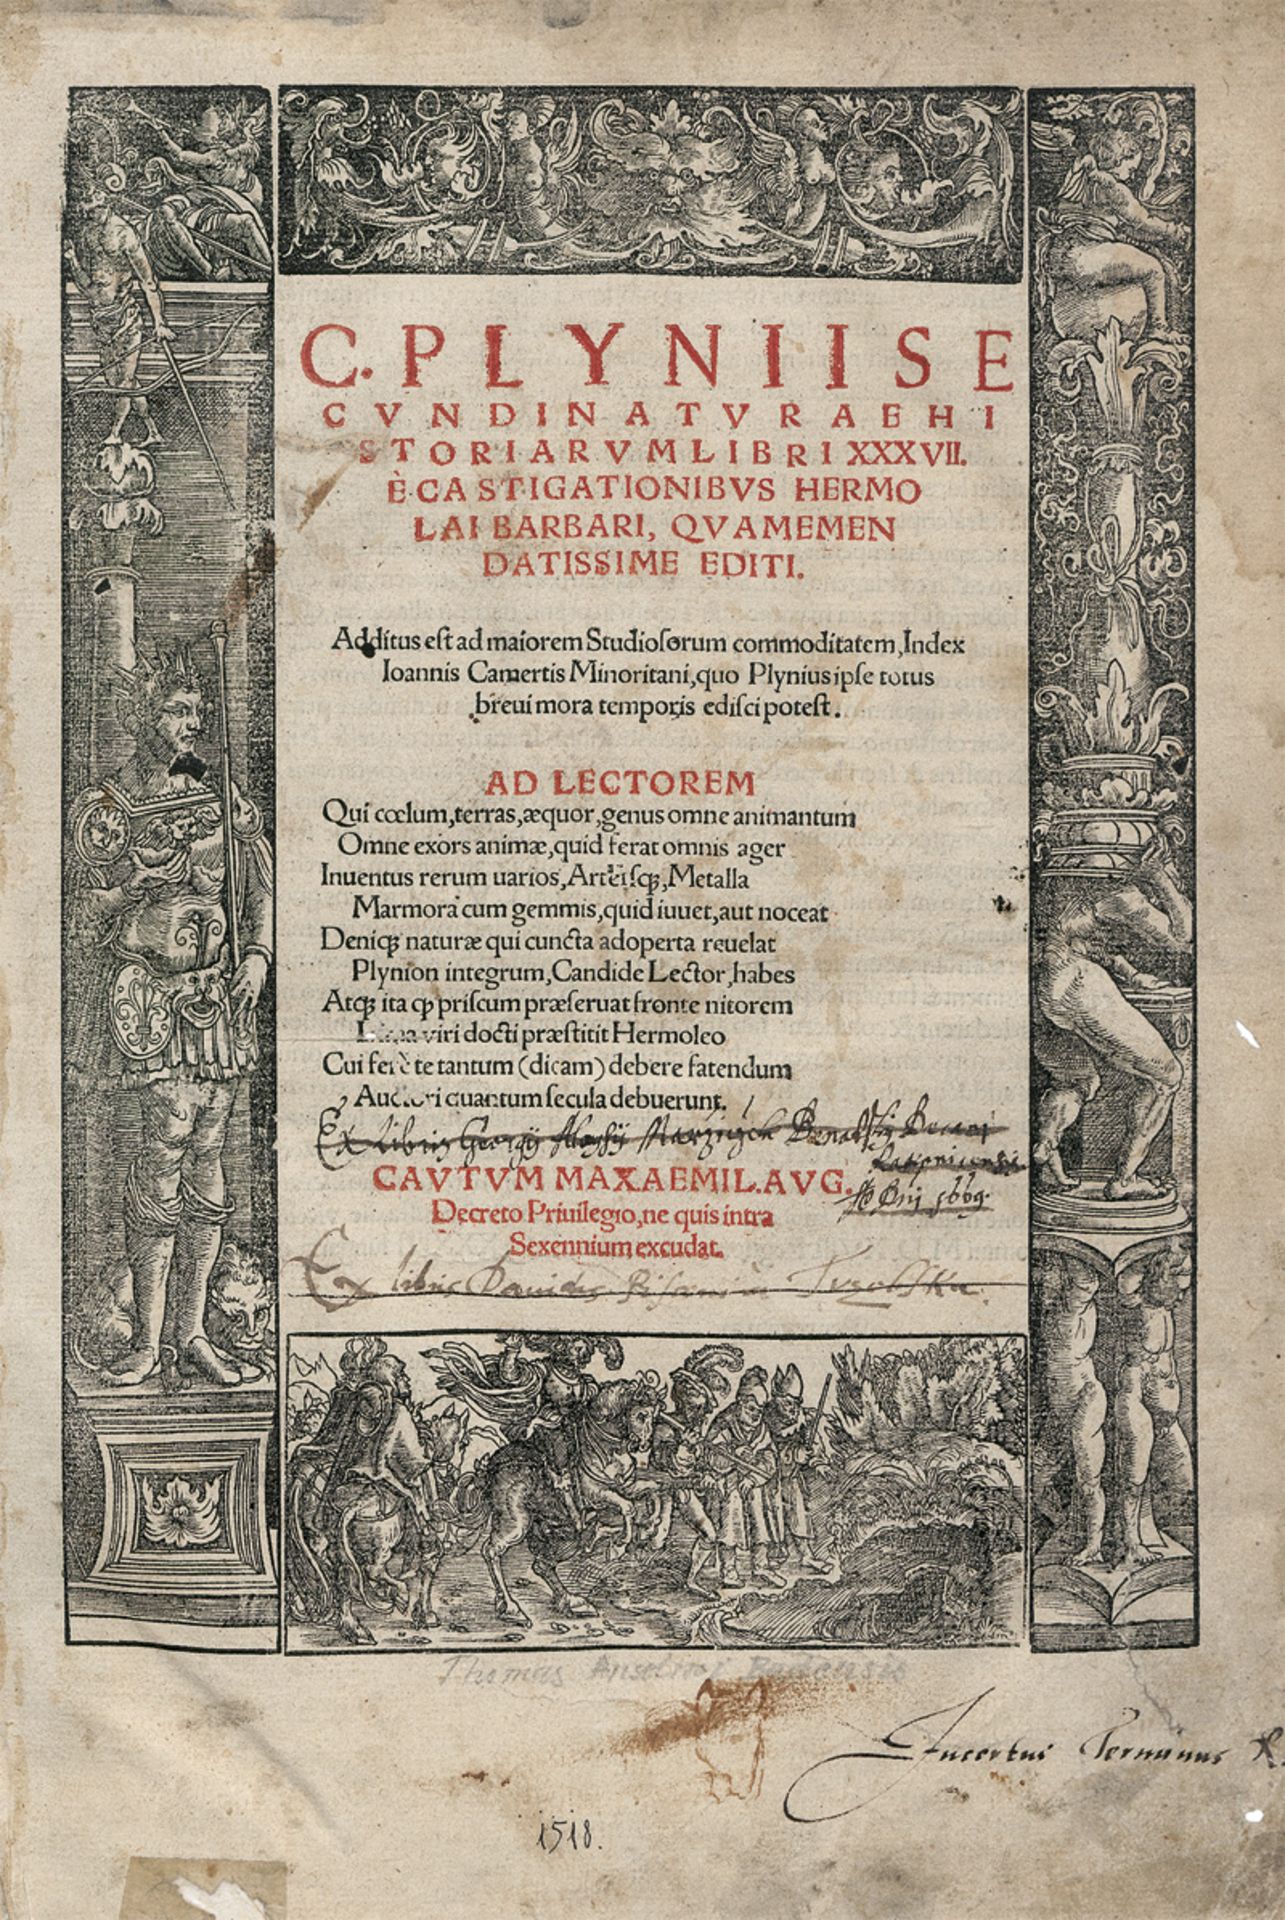 Plinius Secundus, Gaius: Naturae historiarum libri XXXVII